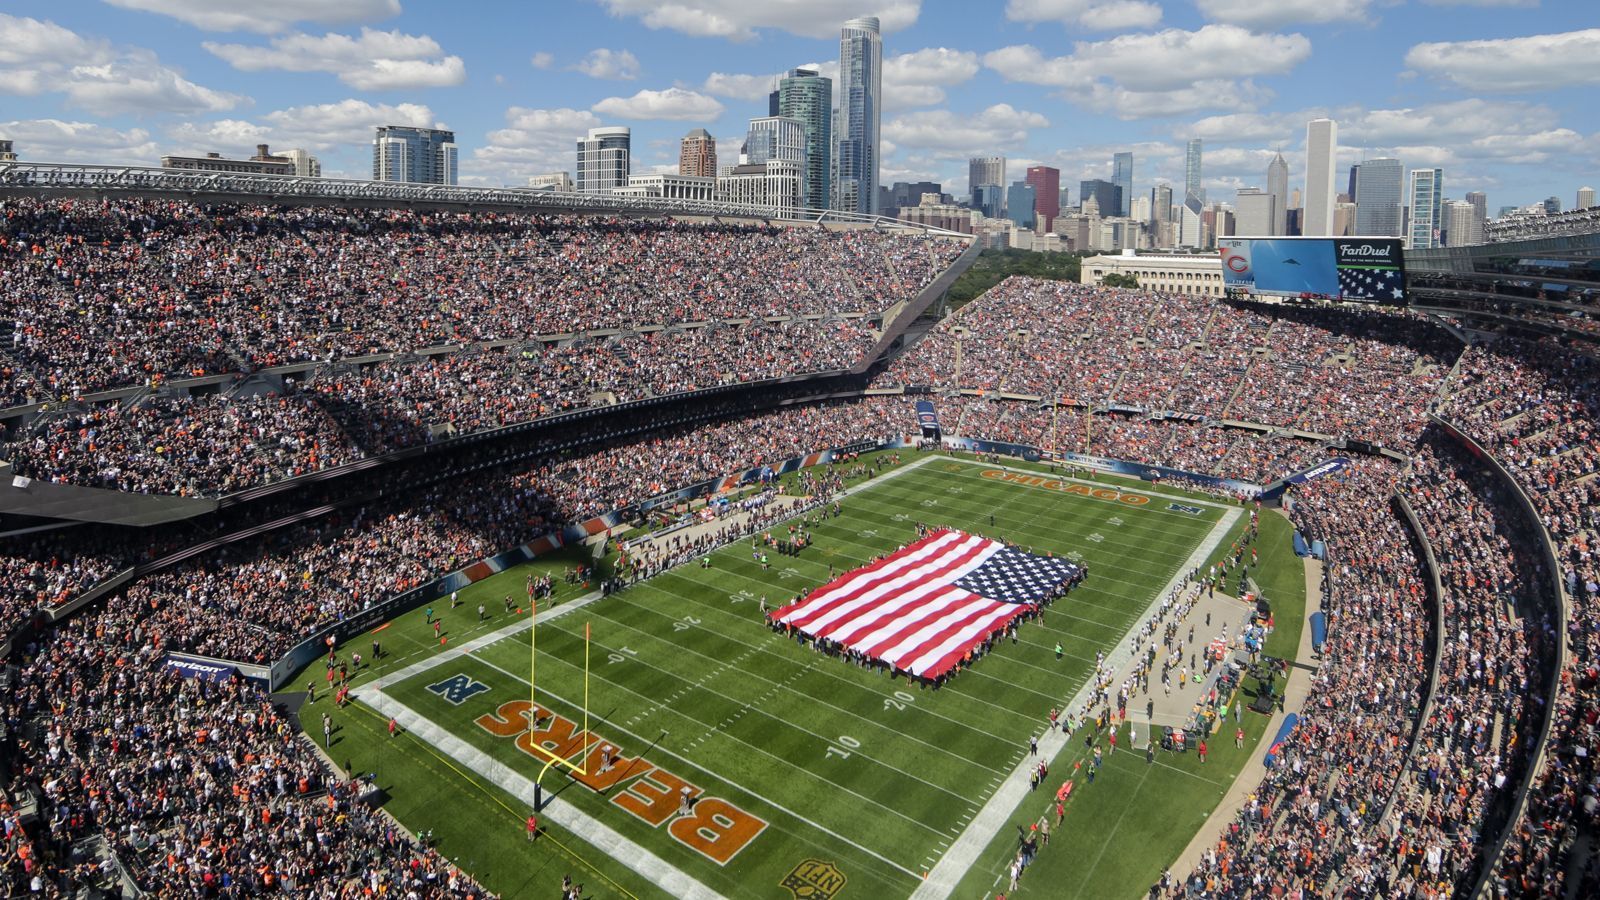 <strong>Die Stadien der 32 NFL-Teams</strong><br>Die Chicago Bears haben offenbar die eigenen <a target="_blank" href="https://www.ran.de/sports/american-football/nfl/news/chicago-bears-aendern-plaene-fuer-neues-stadion-abschied-soldier-field-362365">Stadion-Pläne über den Haufen geworfen</a> und werden nun doch innerhalb der "Windy City" eine neue Spielstätte bauen. Die Franchise hatte zuvor im Vorort Arlington Heights ein Grundstück gekauft, auf dem sie eigentlich ein Stadion errichten wollten. <em><strong>ran</strong></em> blickt auf alle NFL-Stadien.